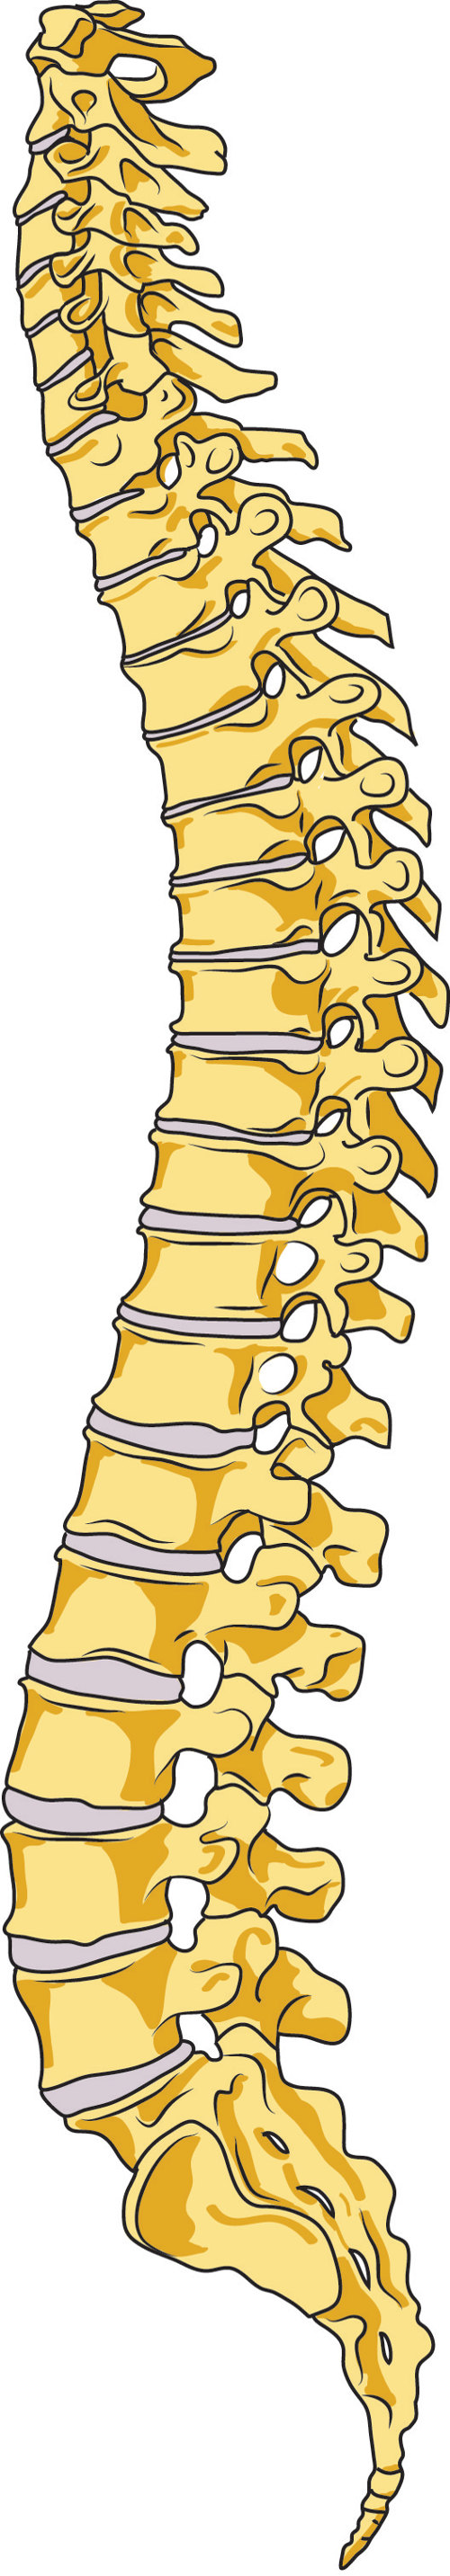 Az emberi nyaki gerinc sérülése - BME TDK Portál